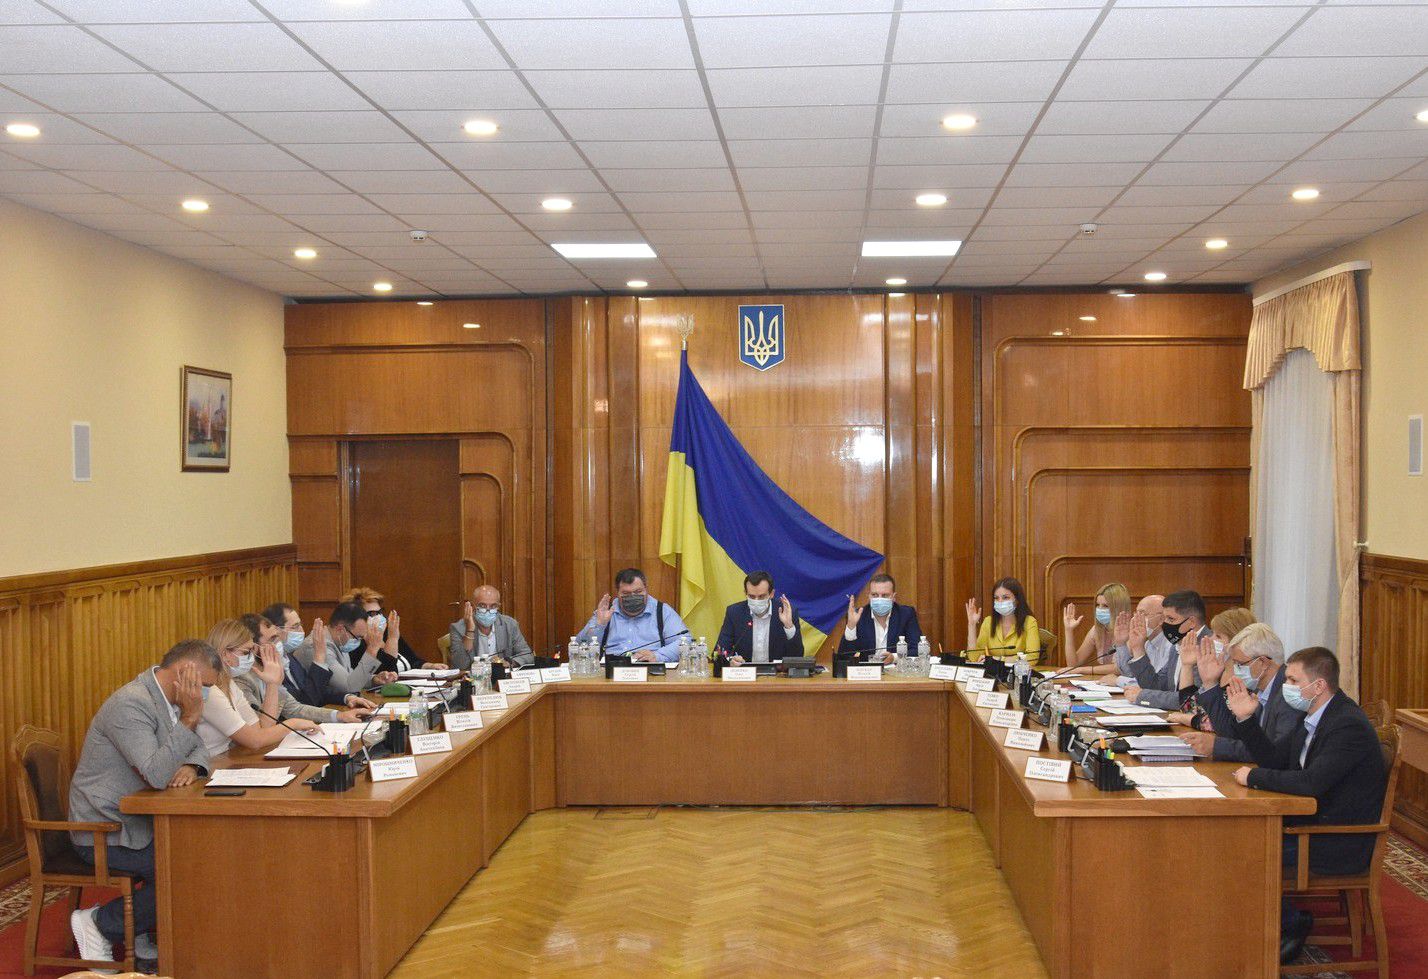 Зареєстровано довірених осіб кандидата в народні депутати України Давиденко Л.О.